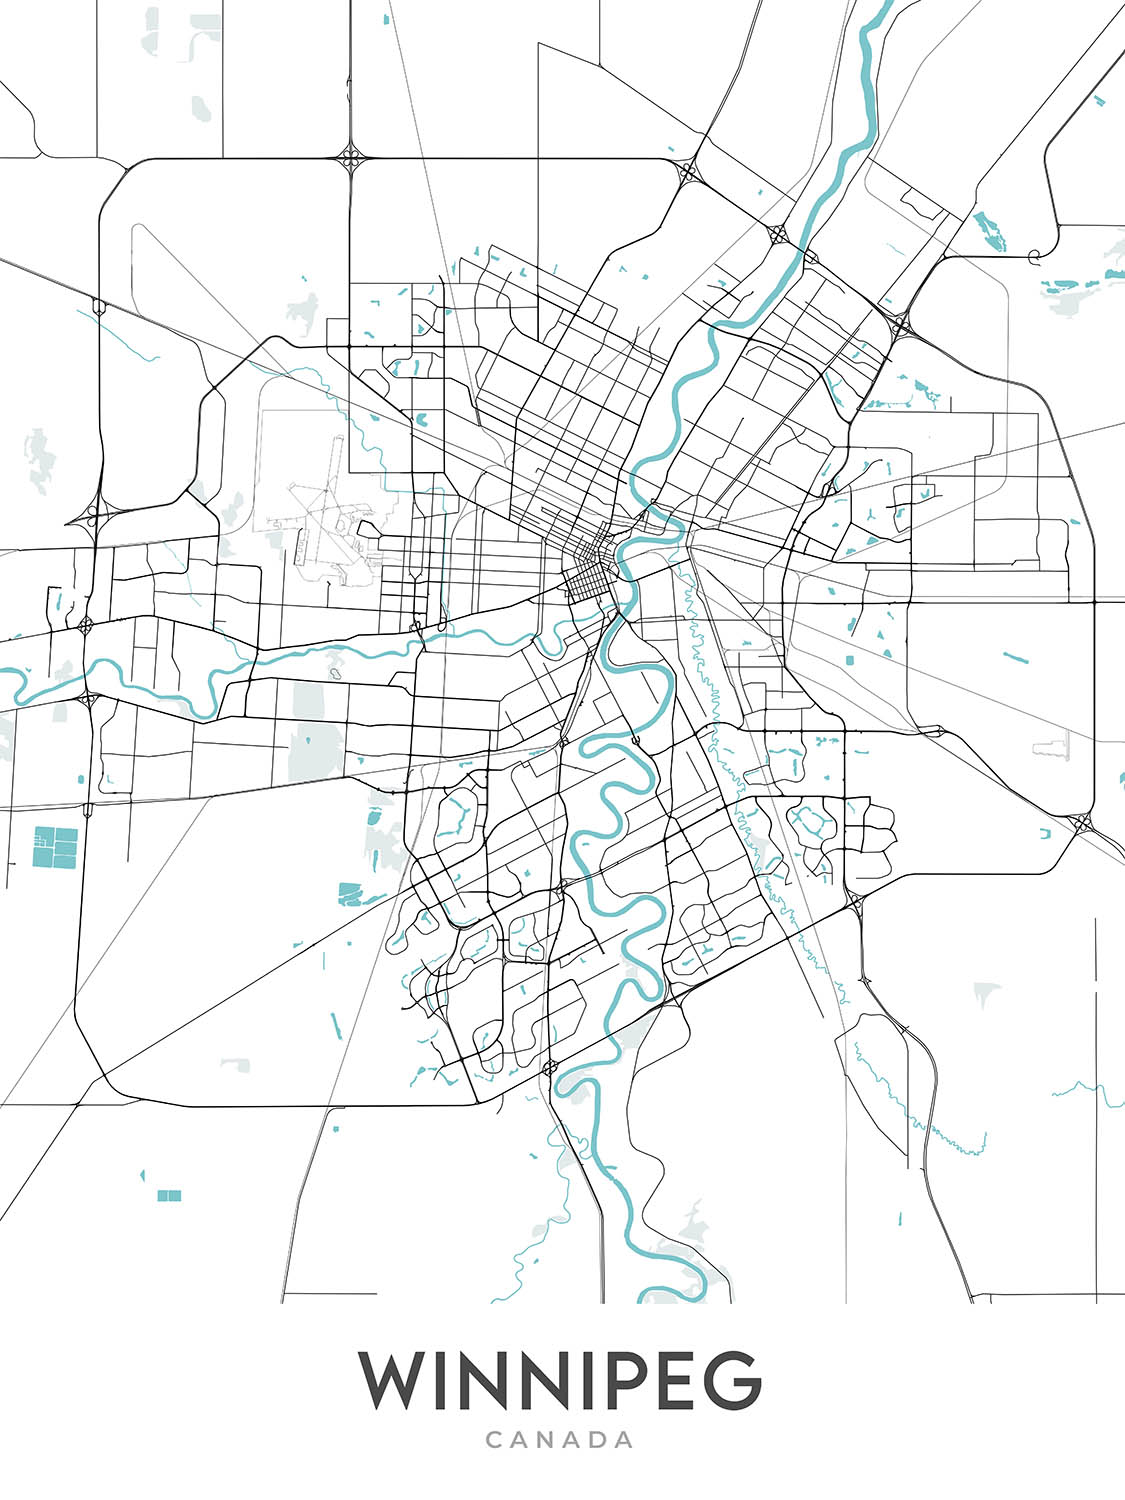 Plan de la ville moderne de Winnipeg, Canada : centre-ville, Saint-Boniface, La Fourche, Musée canadien pour les droits de la personne, Musée du Manitoba